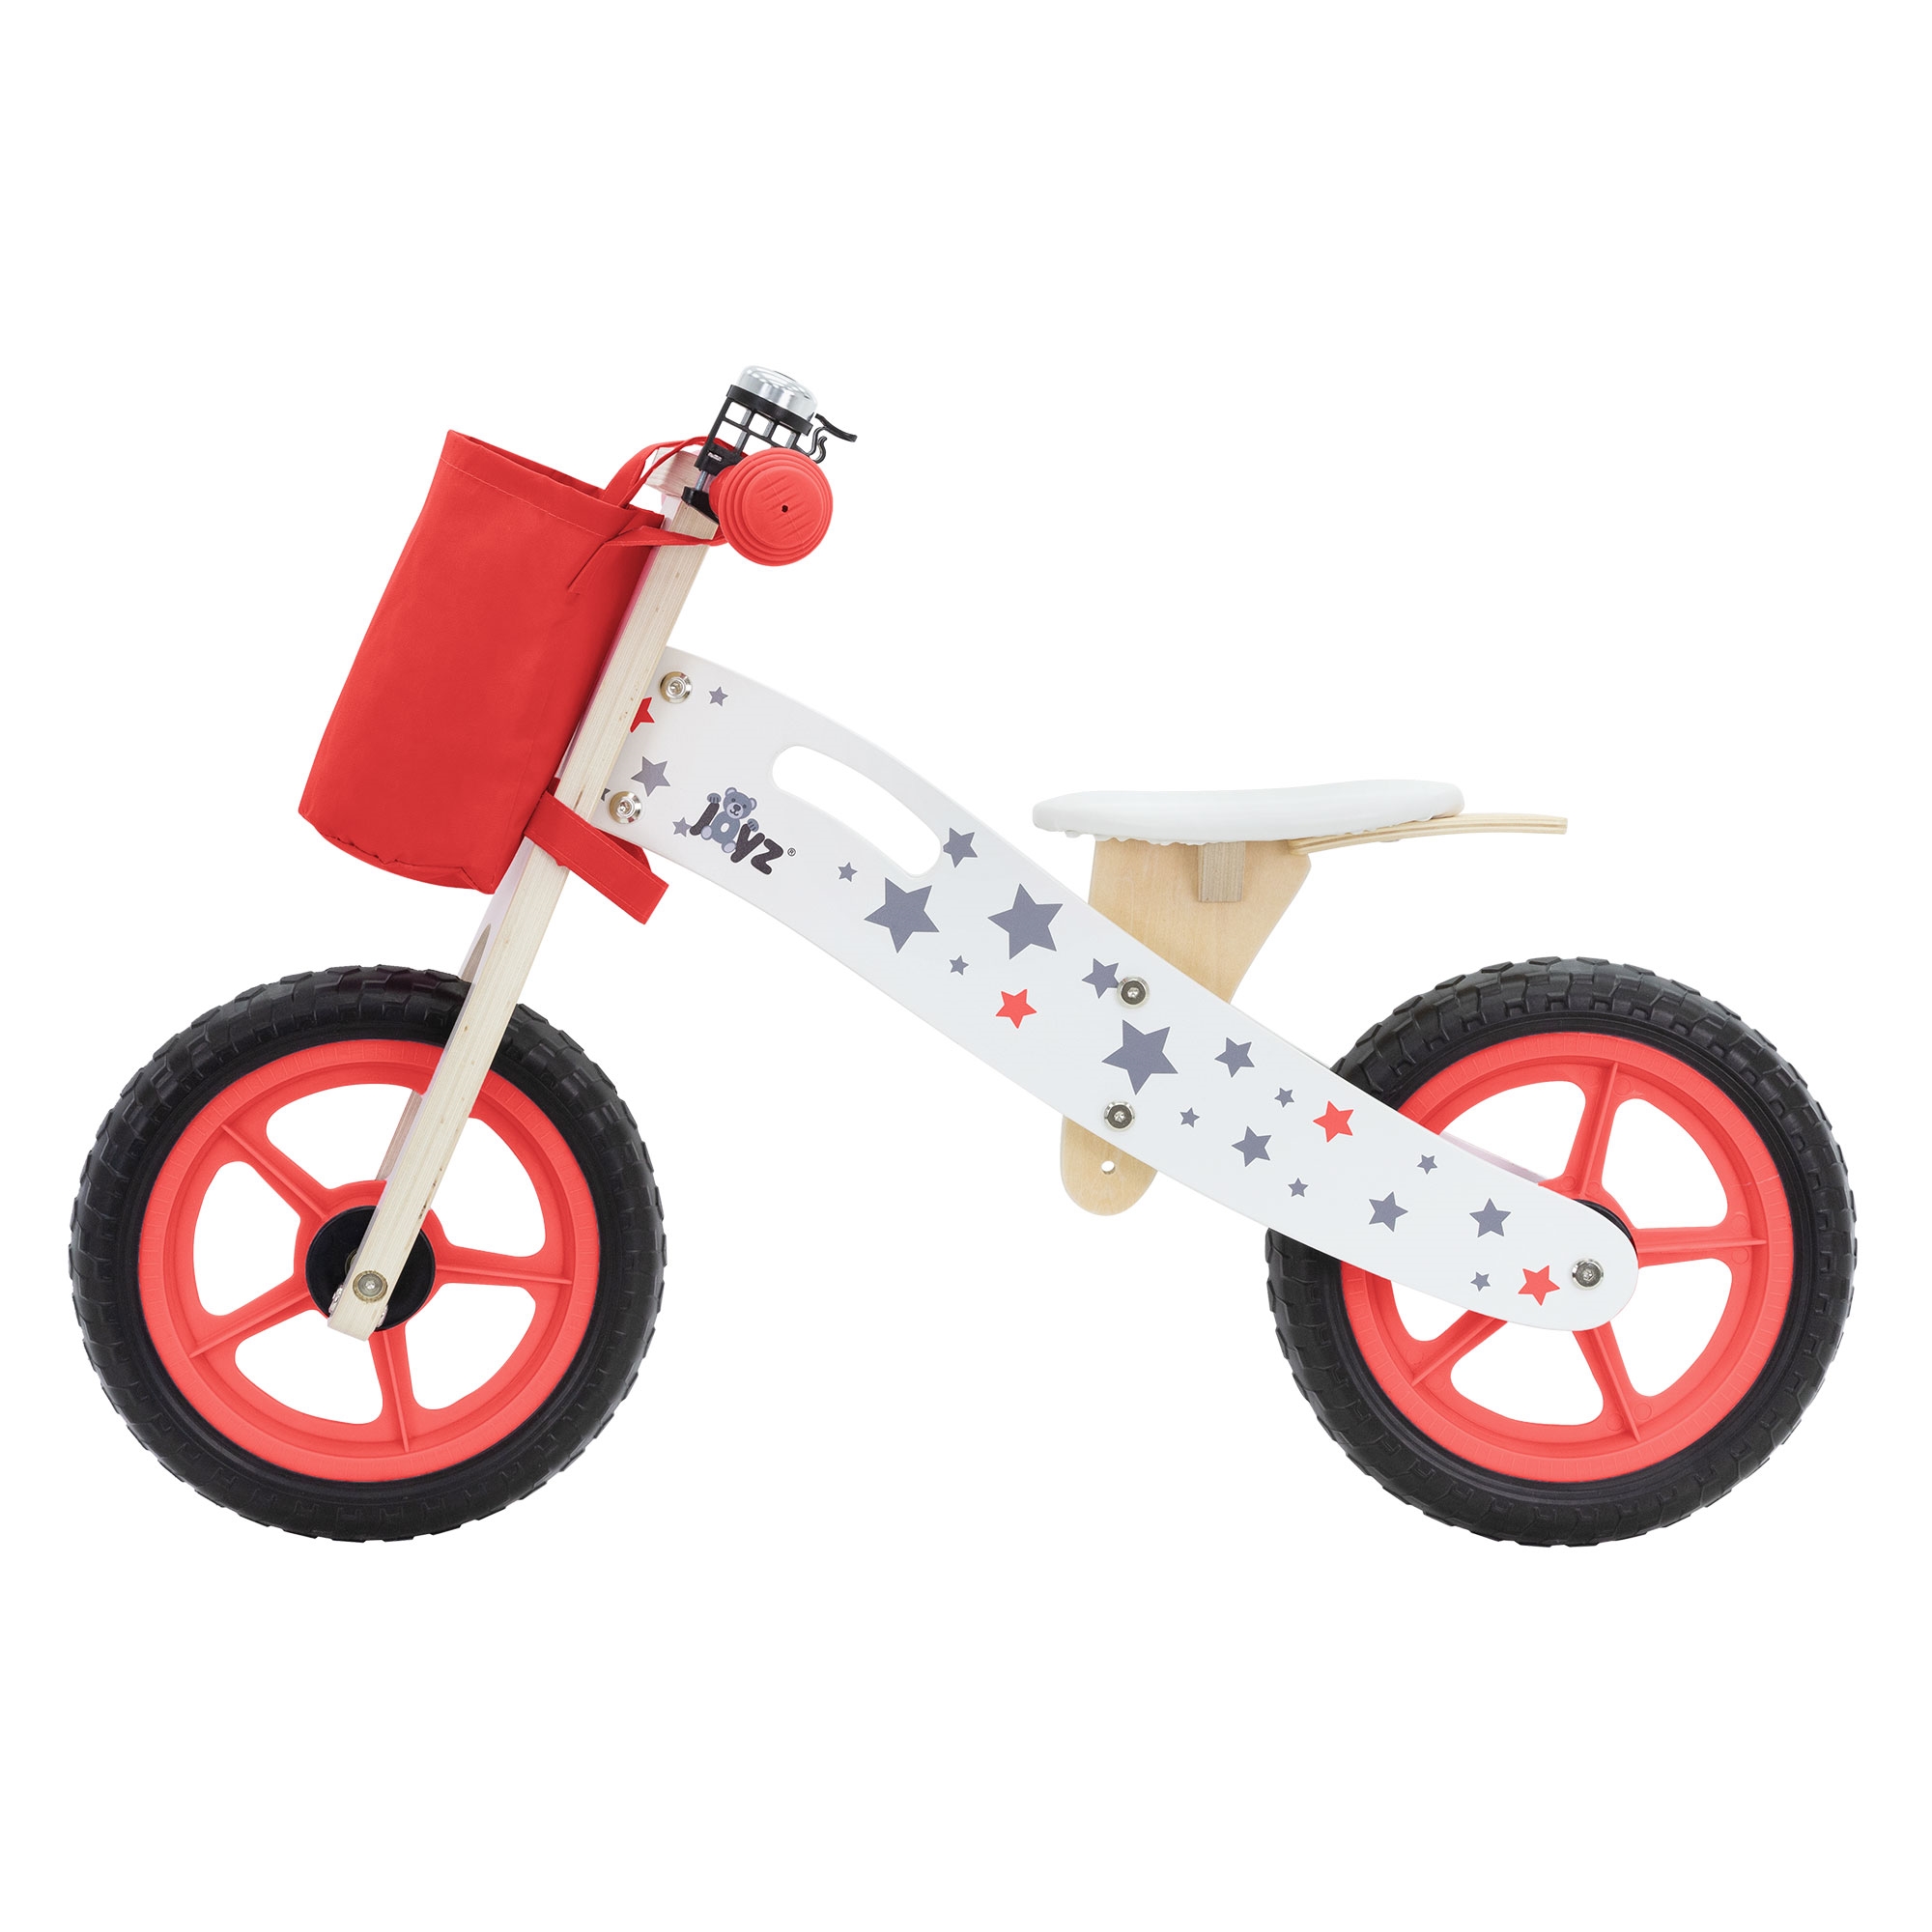 BIKESTAR Bicicleta Infantil para niños y niñas a Partir de 4 años